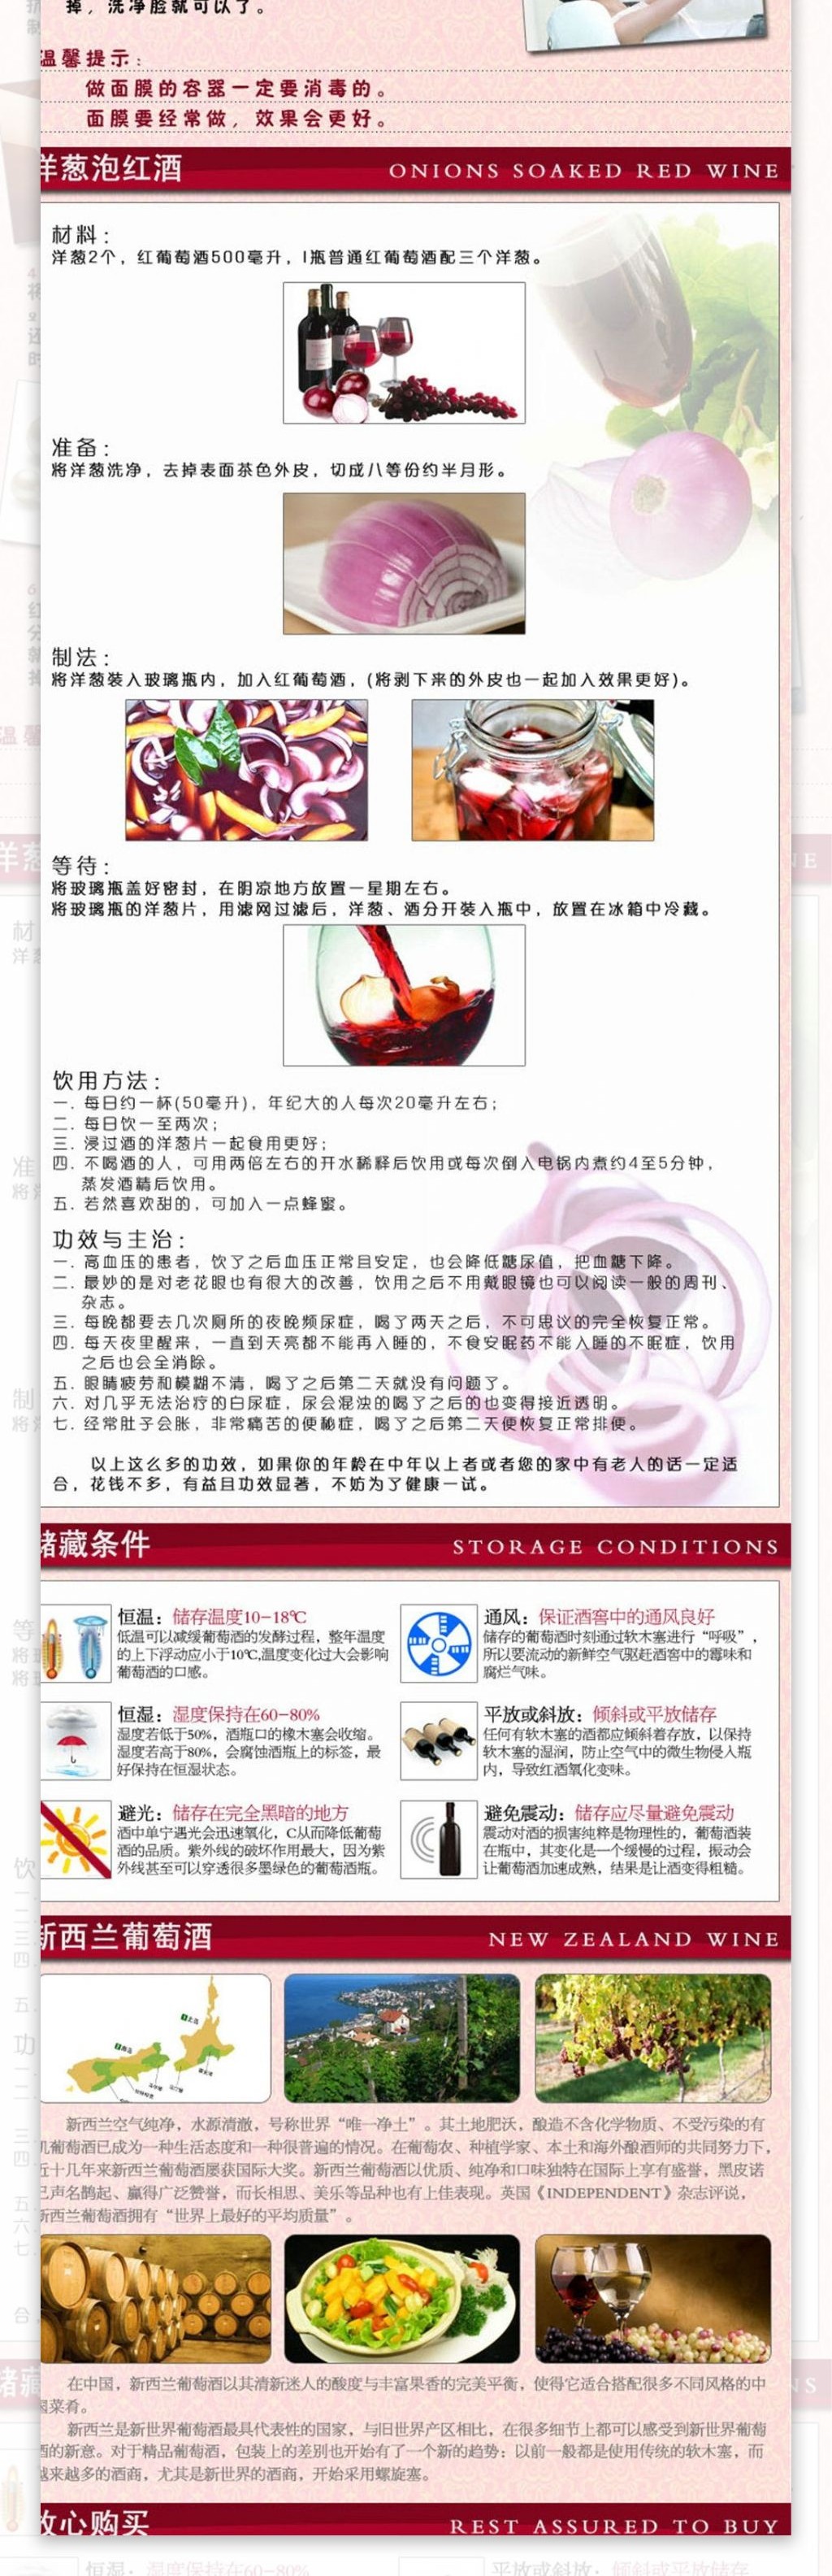 酒淘宝电商食品茶饮详情页设计图